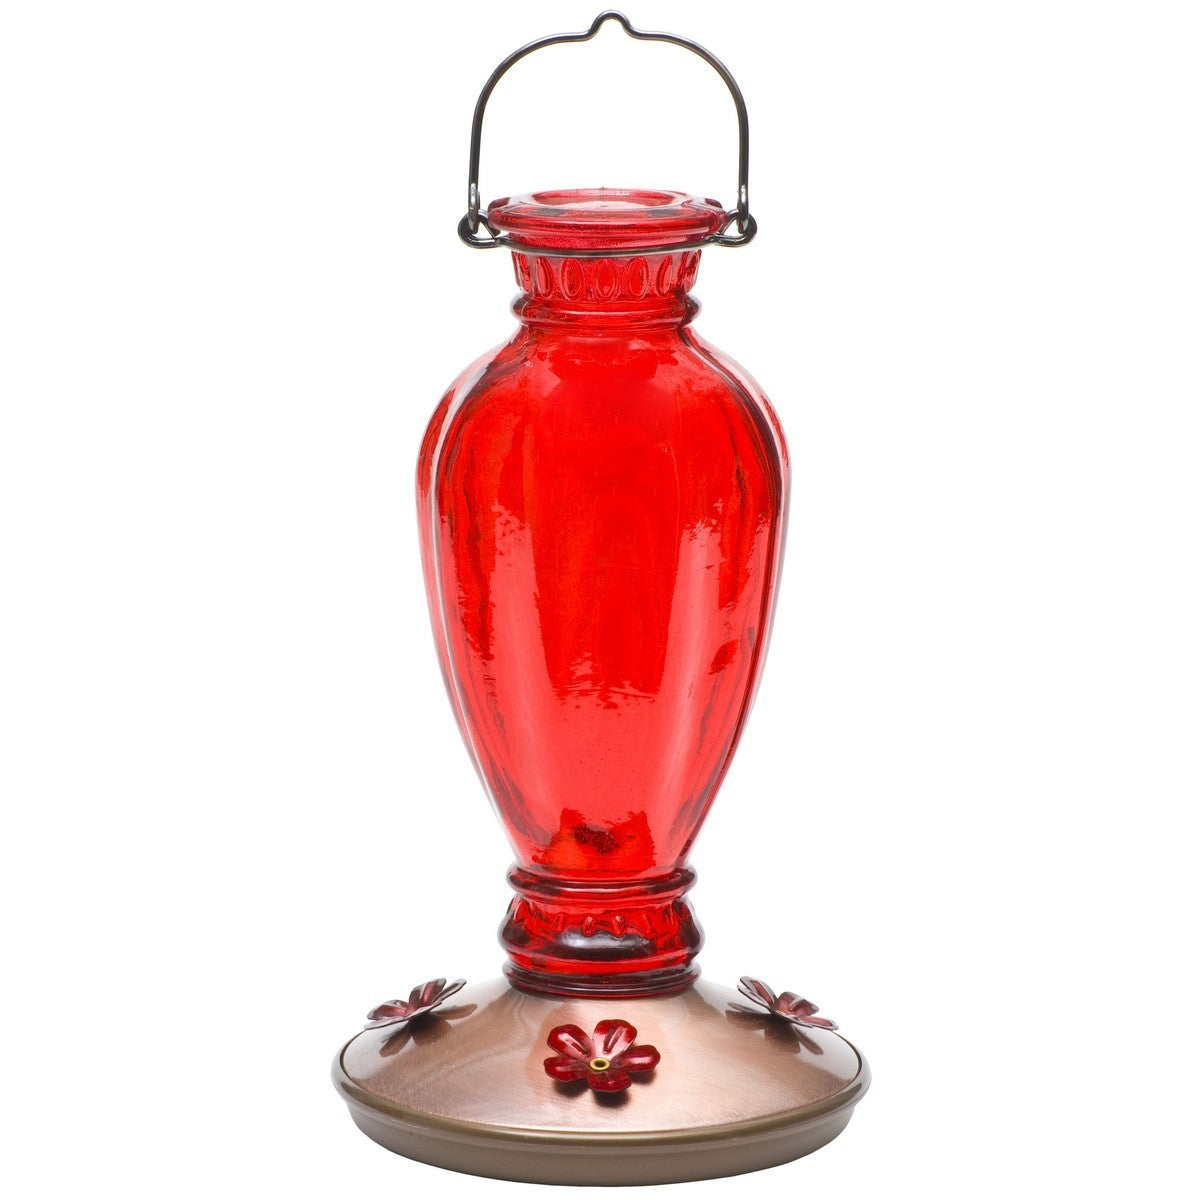 Perky Pet Red Daisy Vase Vintage Hummingbird Feeder - 18 oz